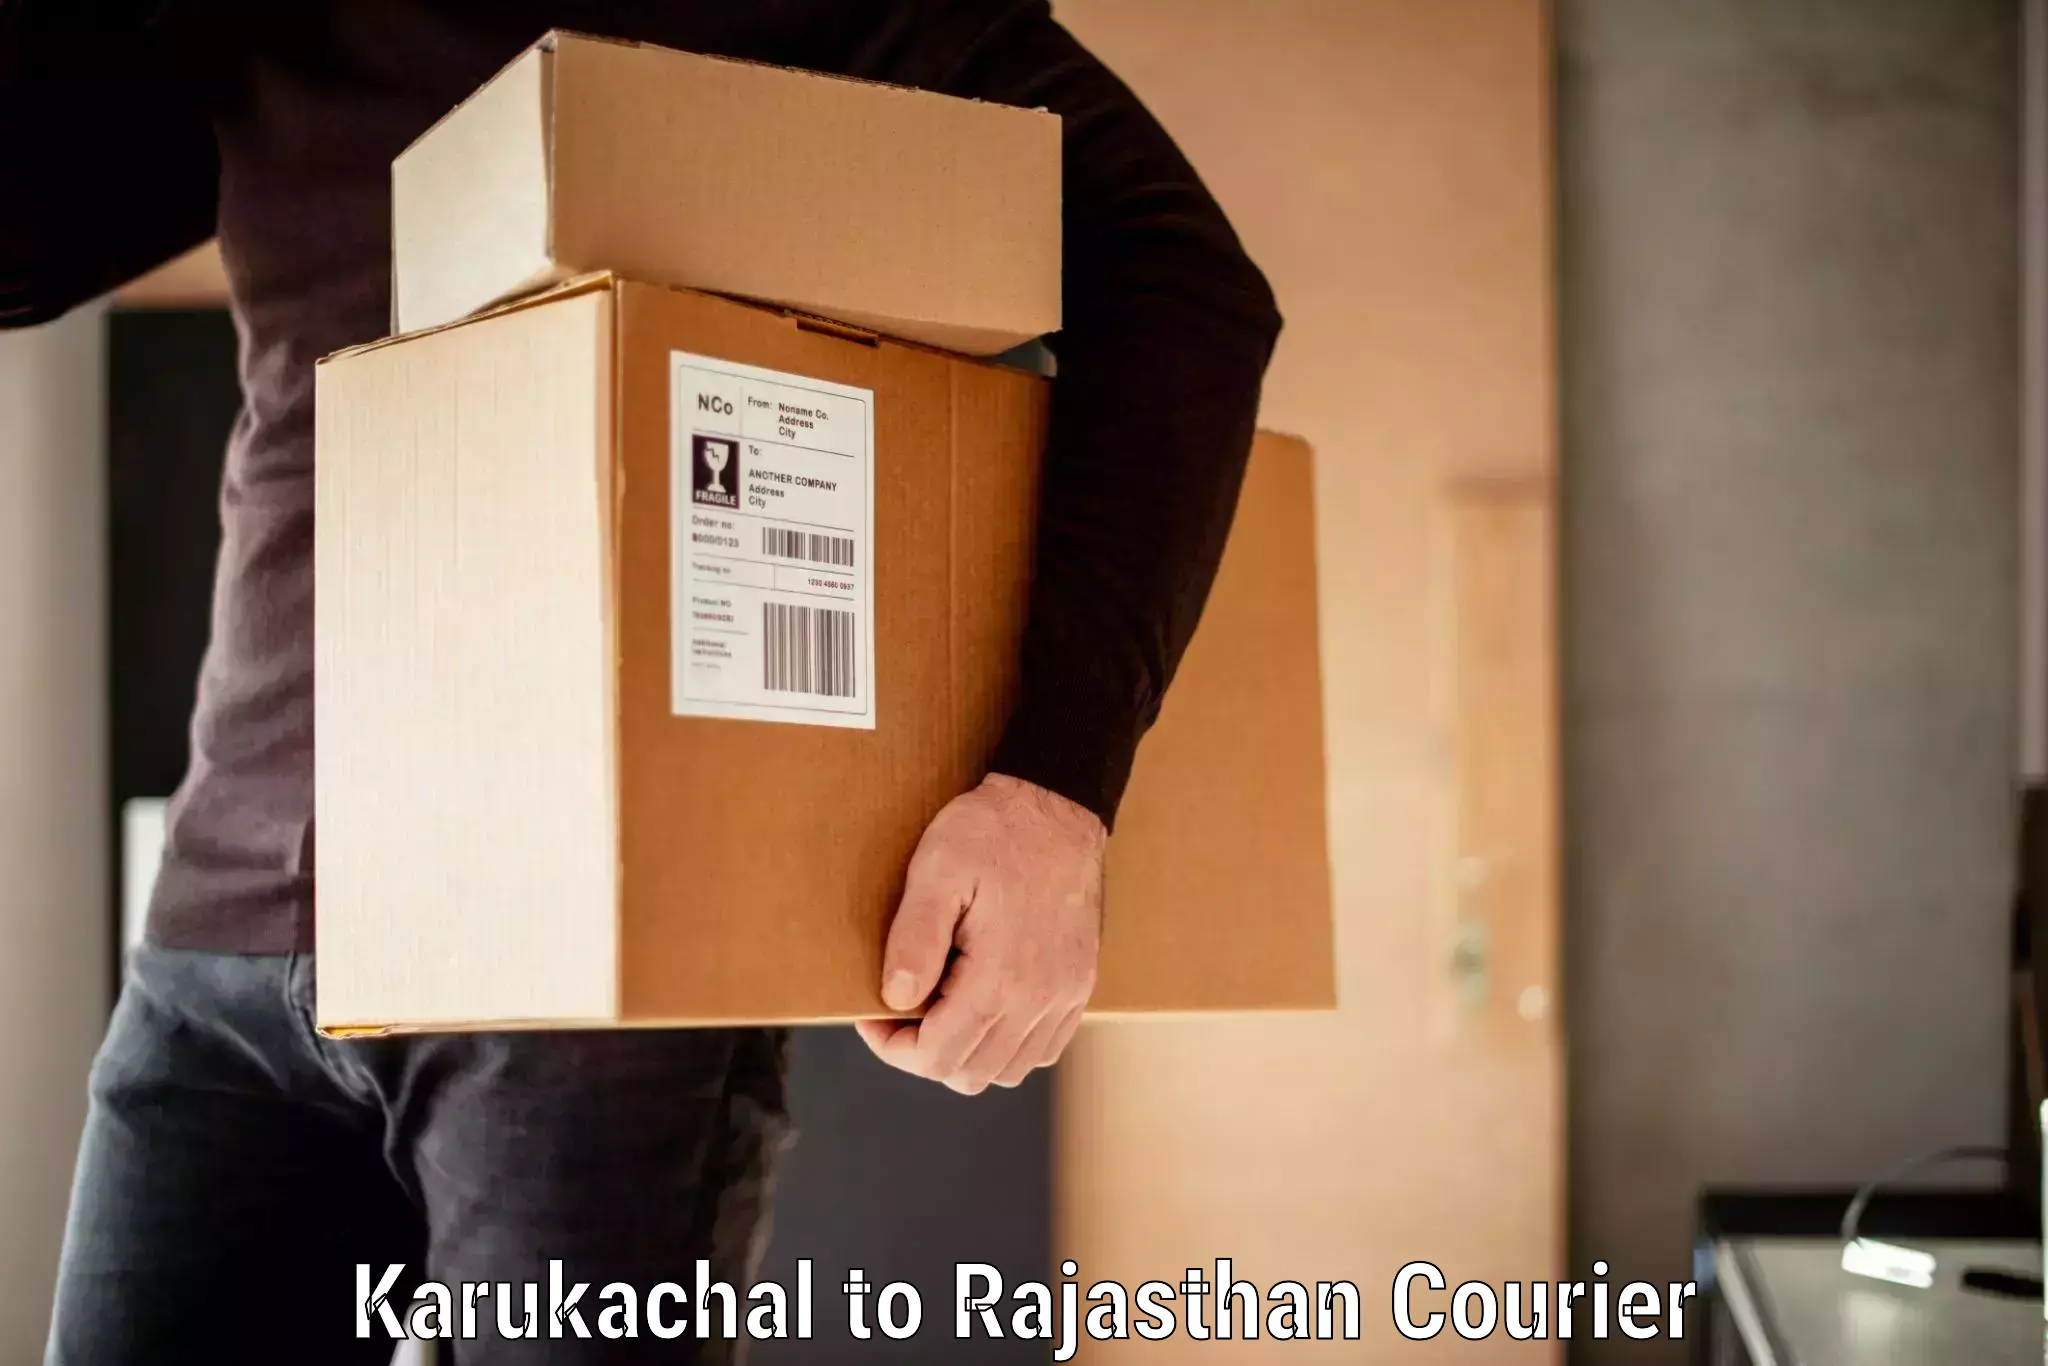 Baggage transport scheduler Karukachal to NIT Jaipur